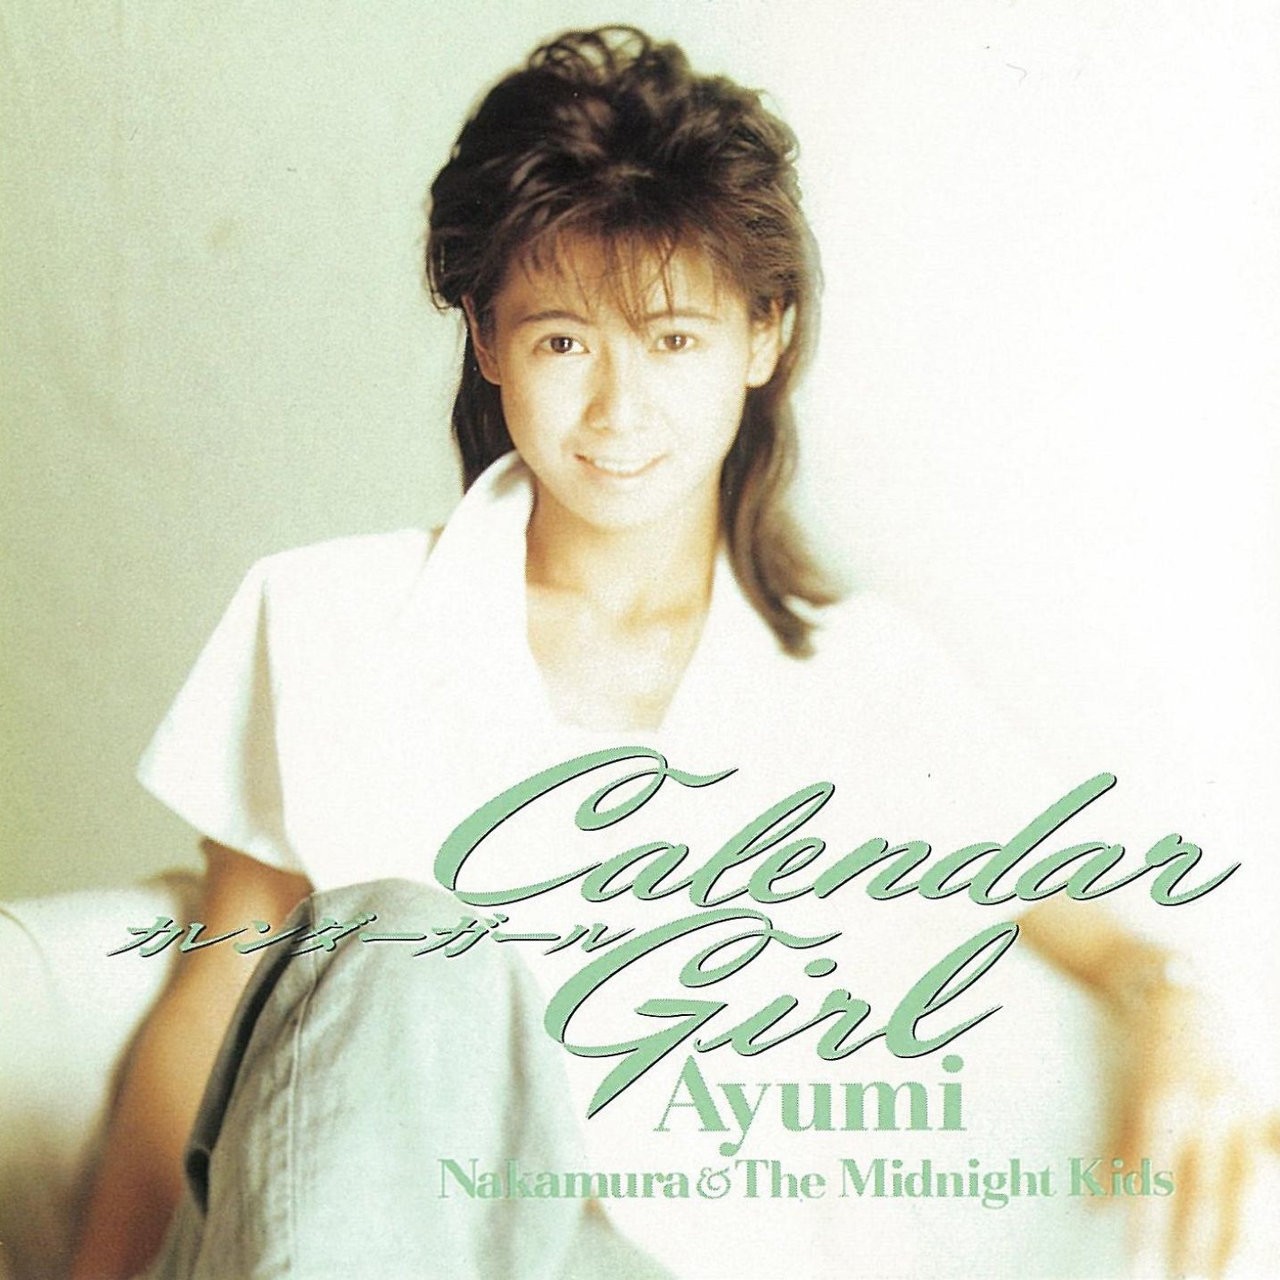 中村あゆみ (Ayumi Nakamura) – Calendar Girl (35周年記念 2019 Remaster) [FLAC 24bit/48kHz]